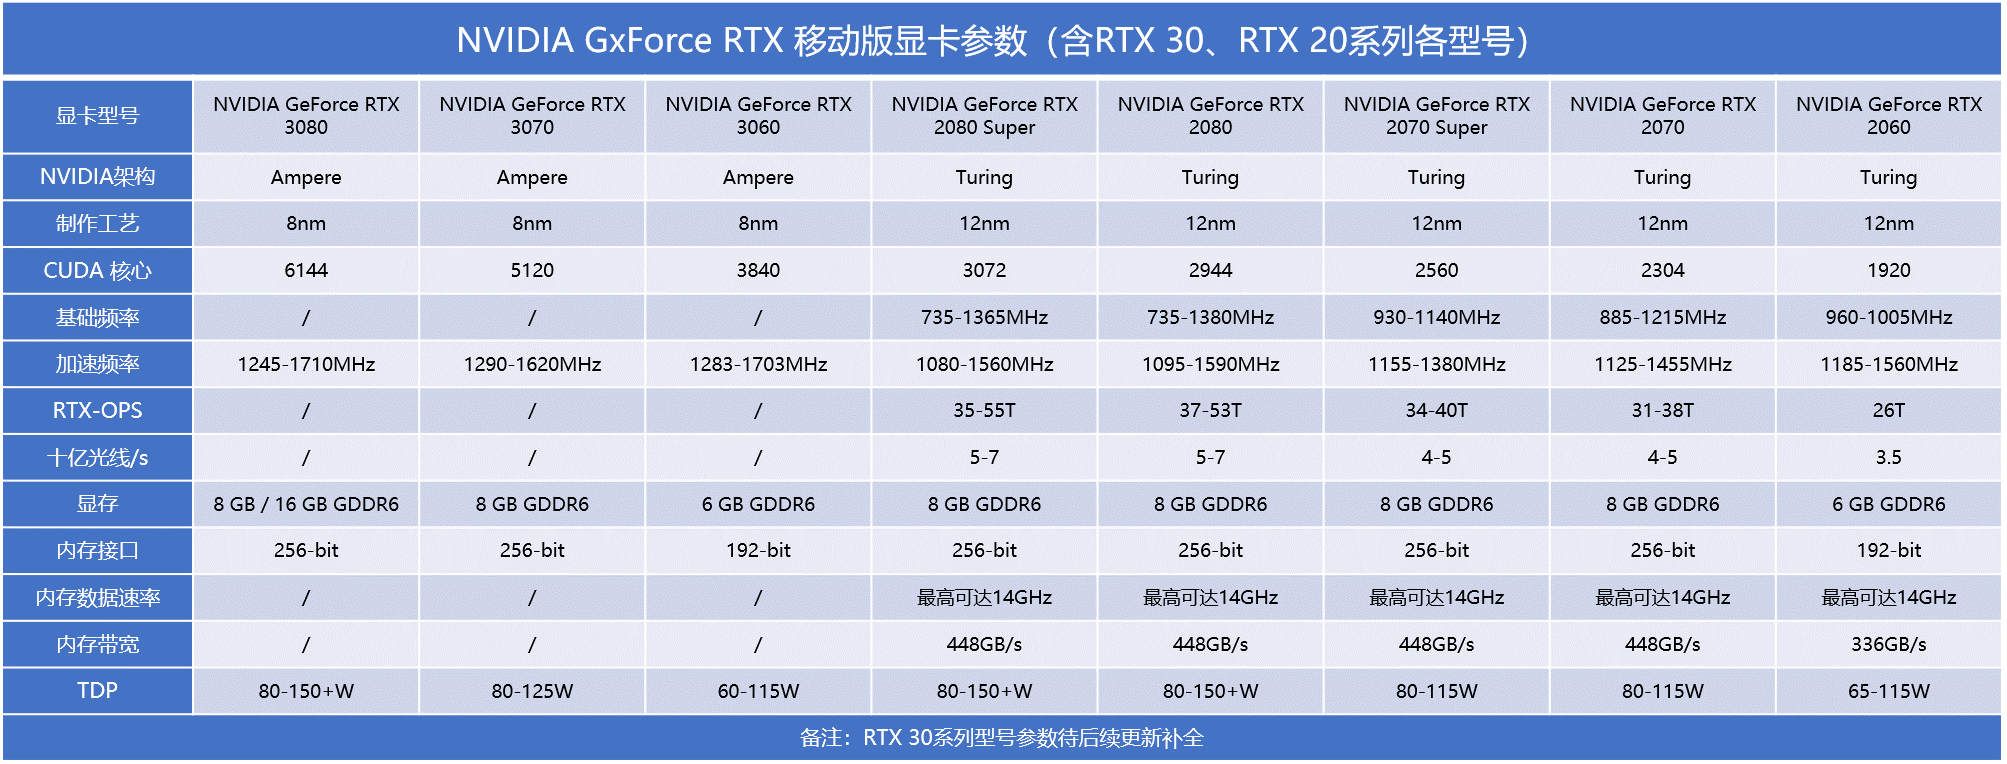 本次发布的rtx 30系移动版显卡型号在功耗,频率上有所下调,但实际性能